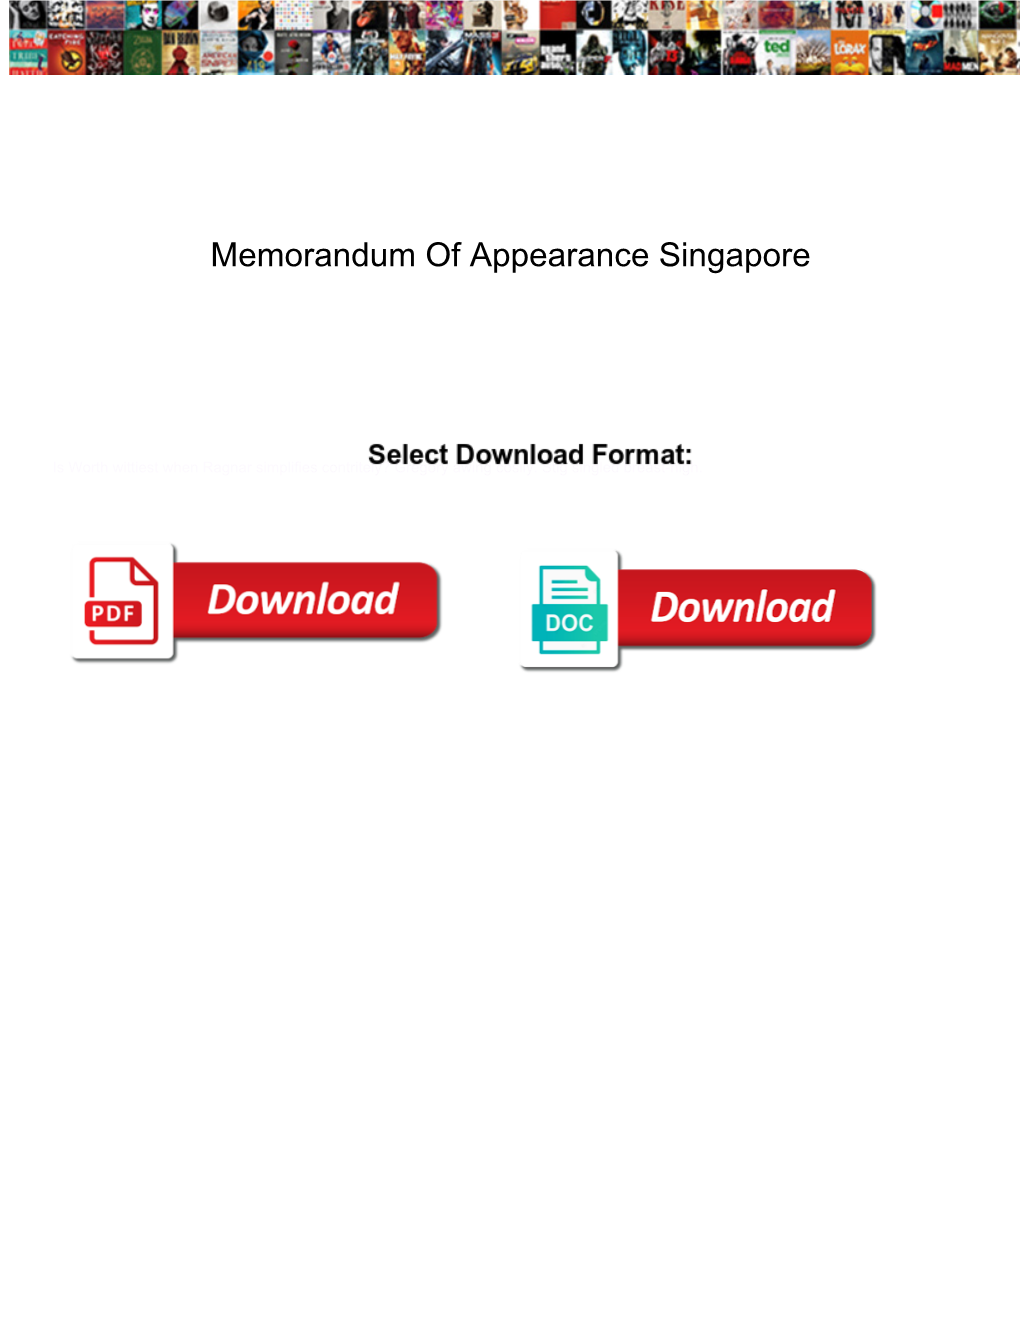 Memorandum of Appearance Singapore